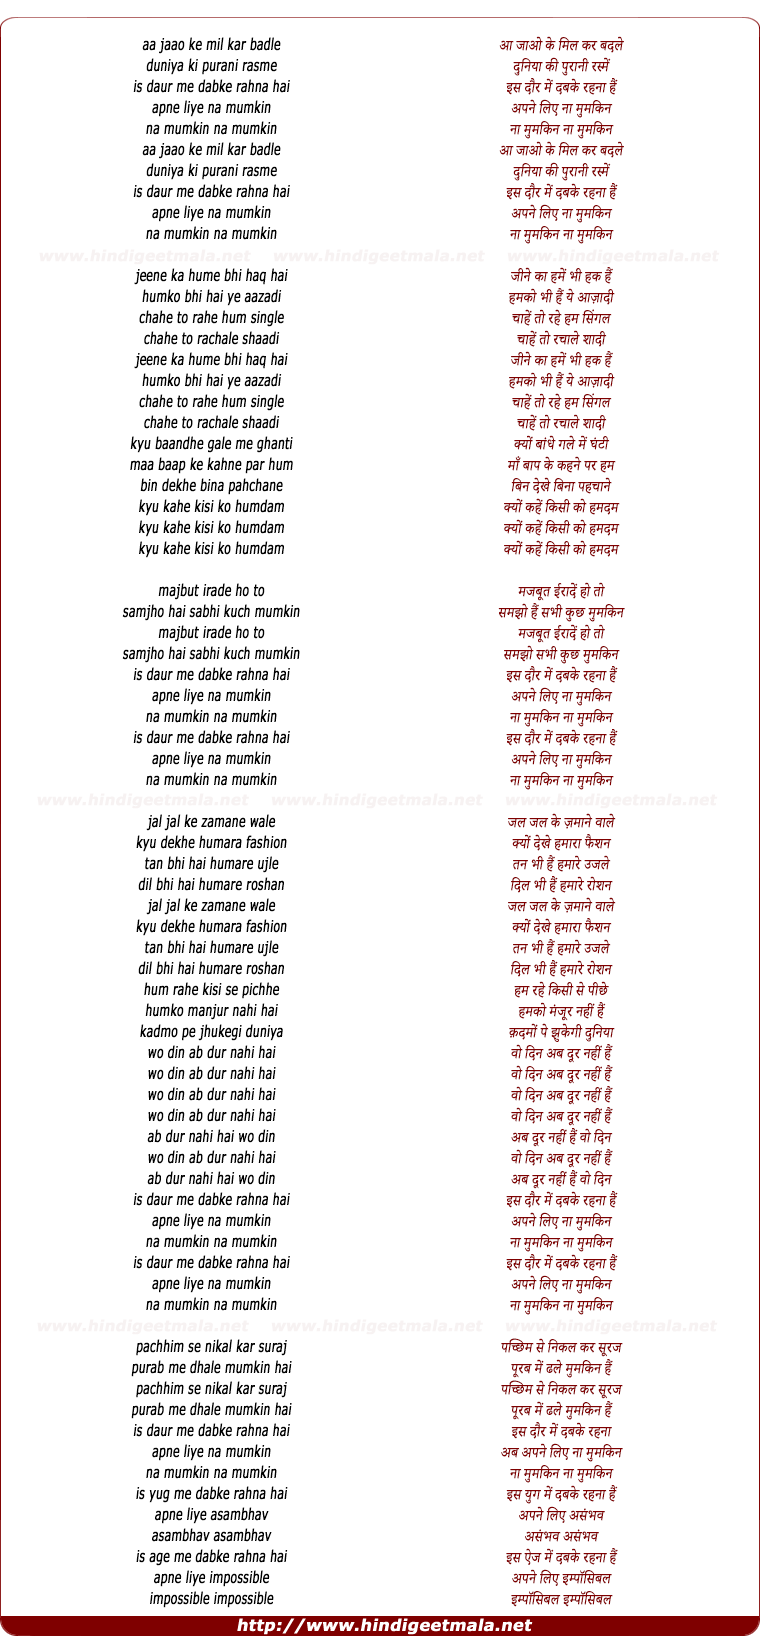 lyrics of song Aa Jao Ki Mil Kar Badle Duniyaa